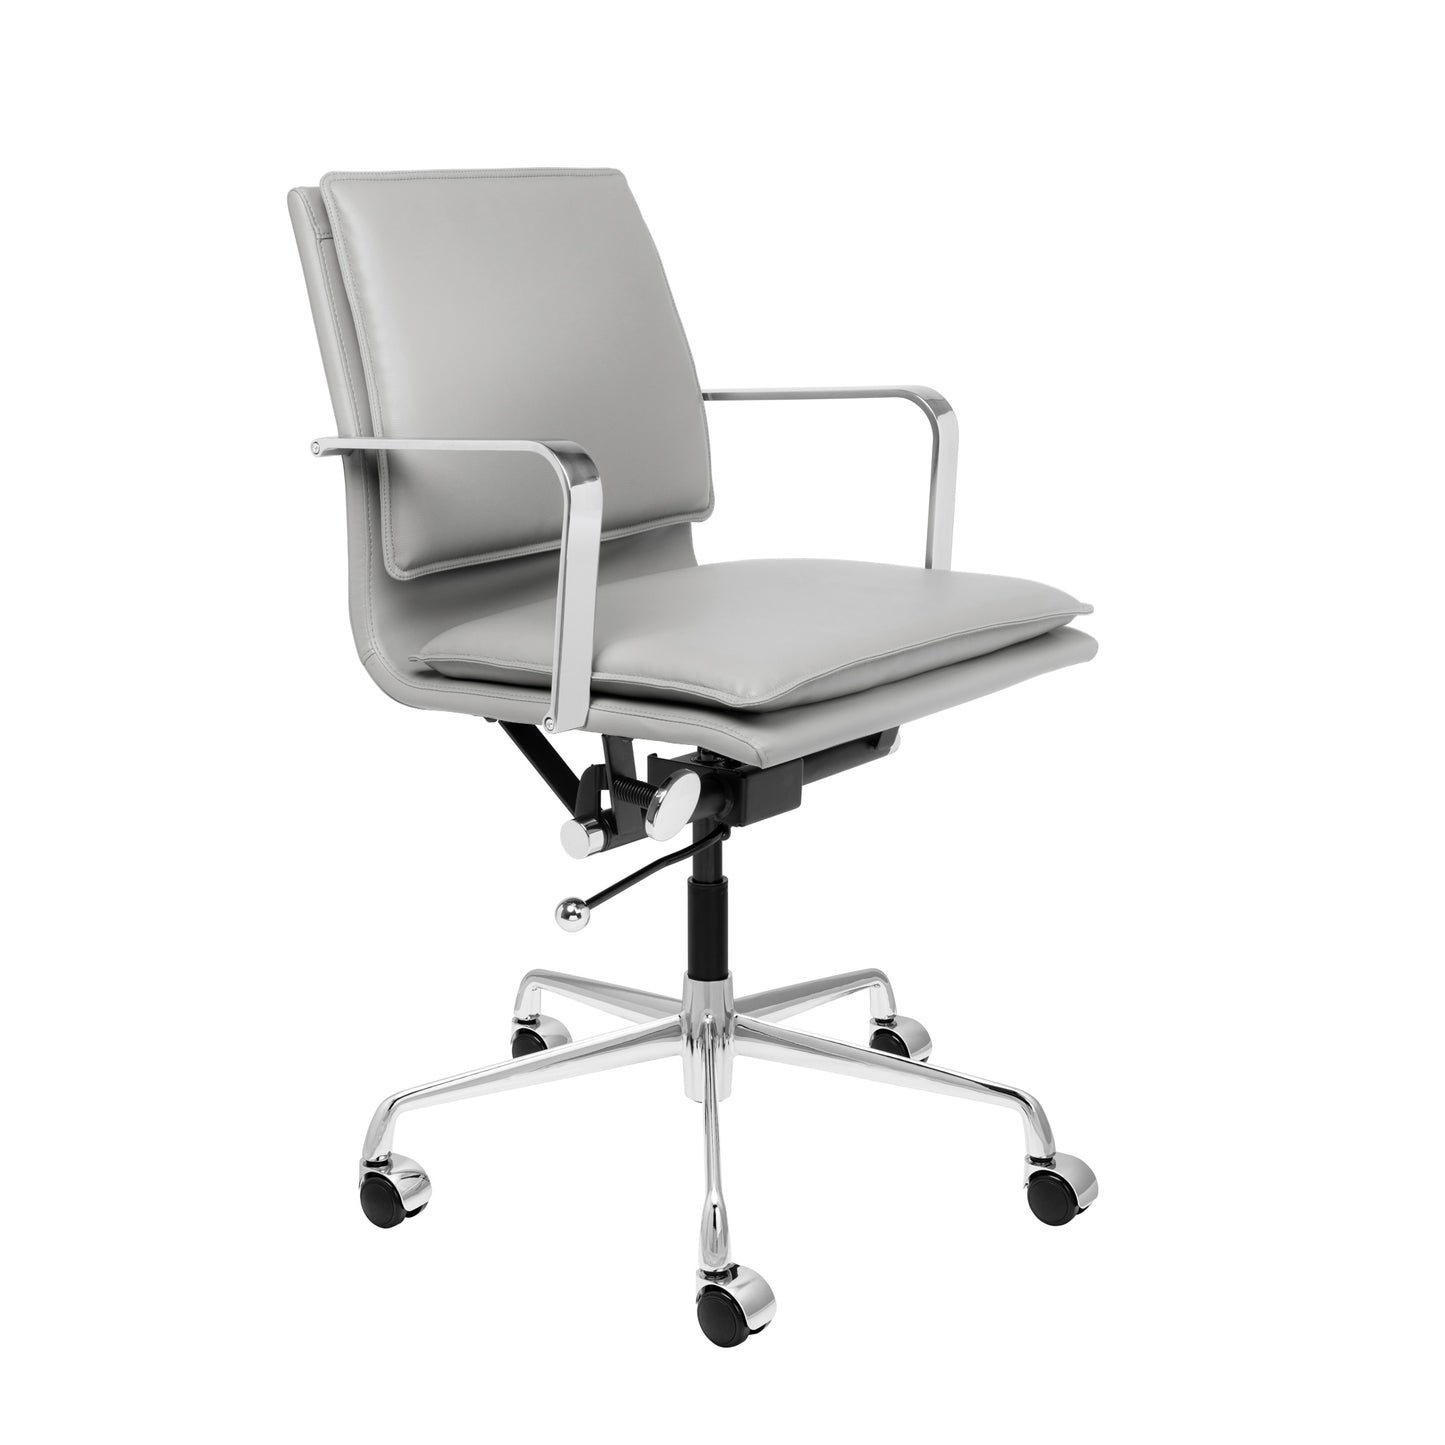 https://lauradavidsondirect.com/cdn/shop/products/lexi-management-chair-grey.jpg?v=1662038498&width=1445